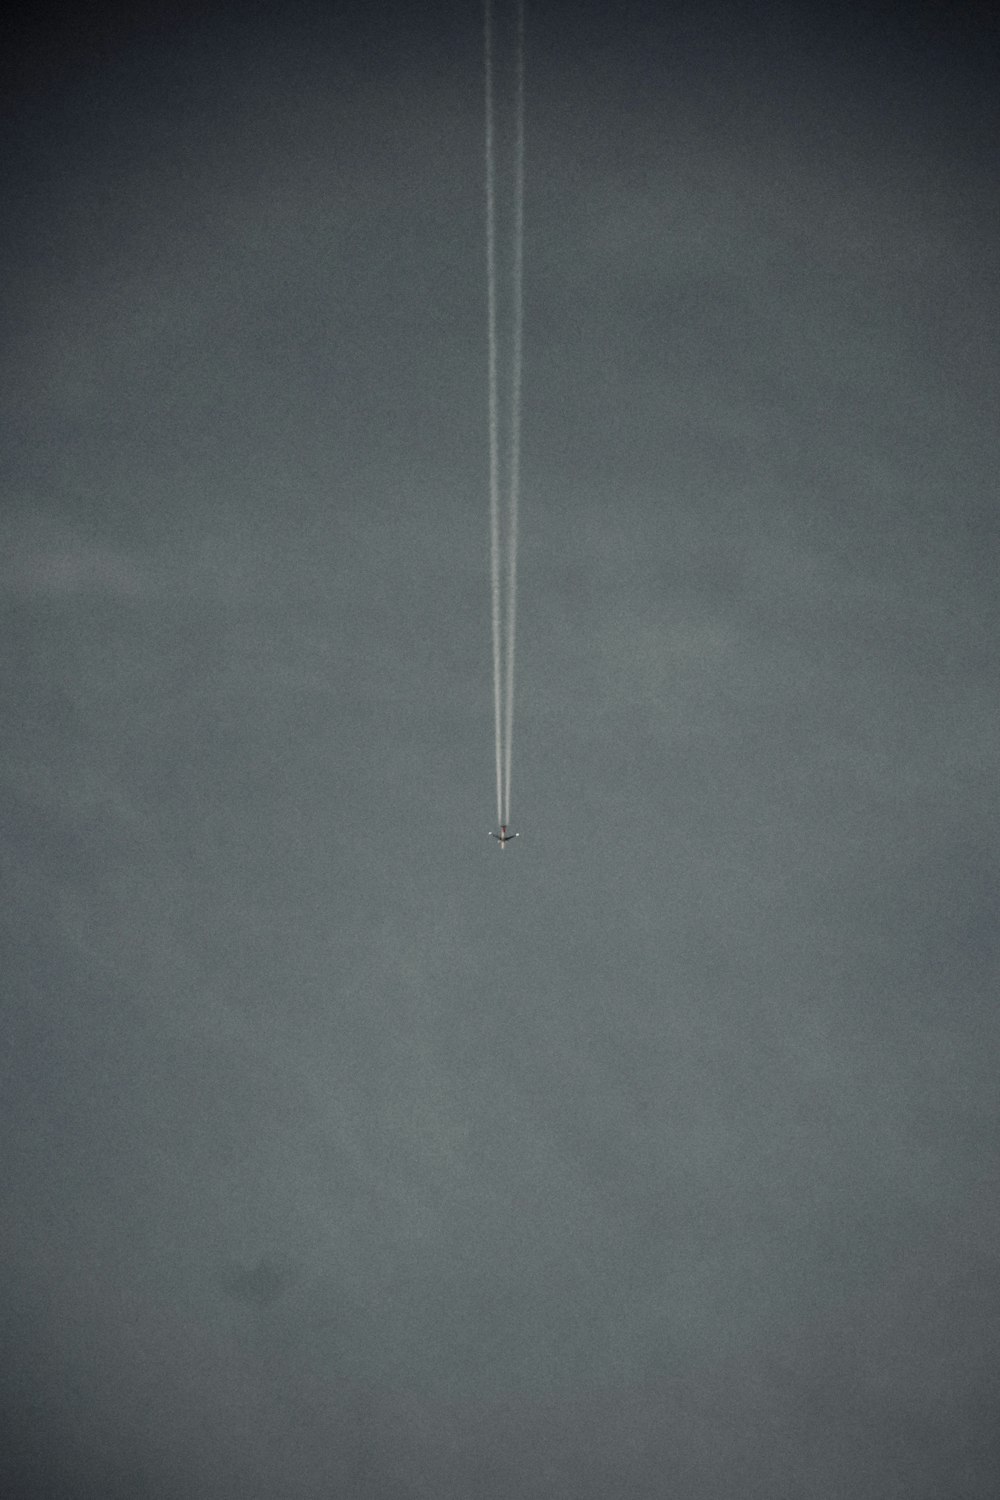 Un avión vuela en el cielo con una estela